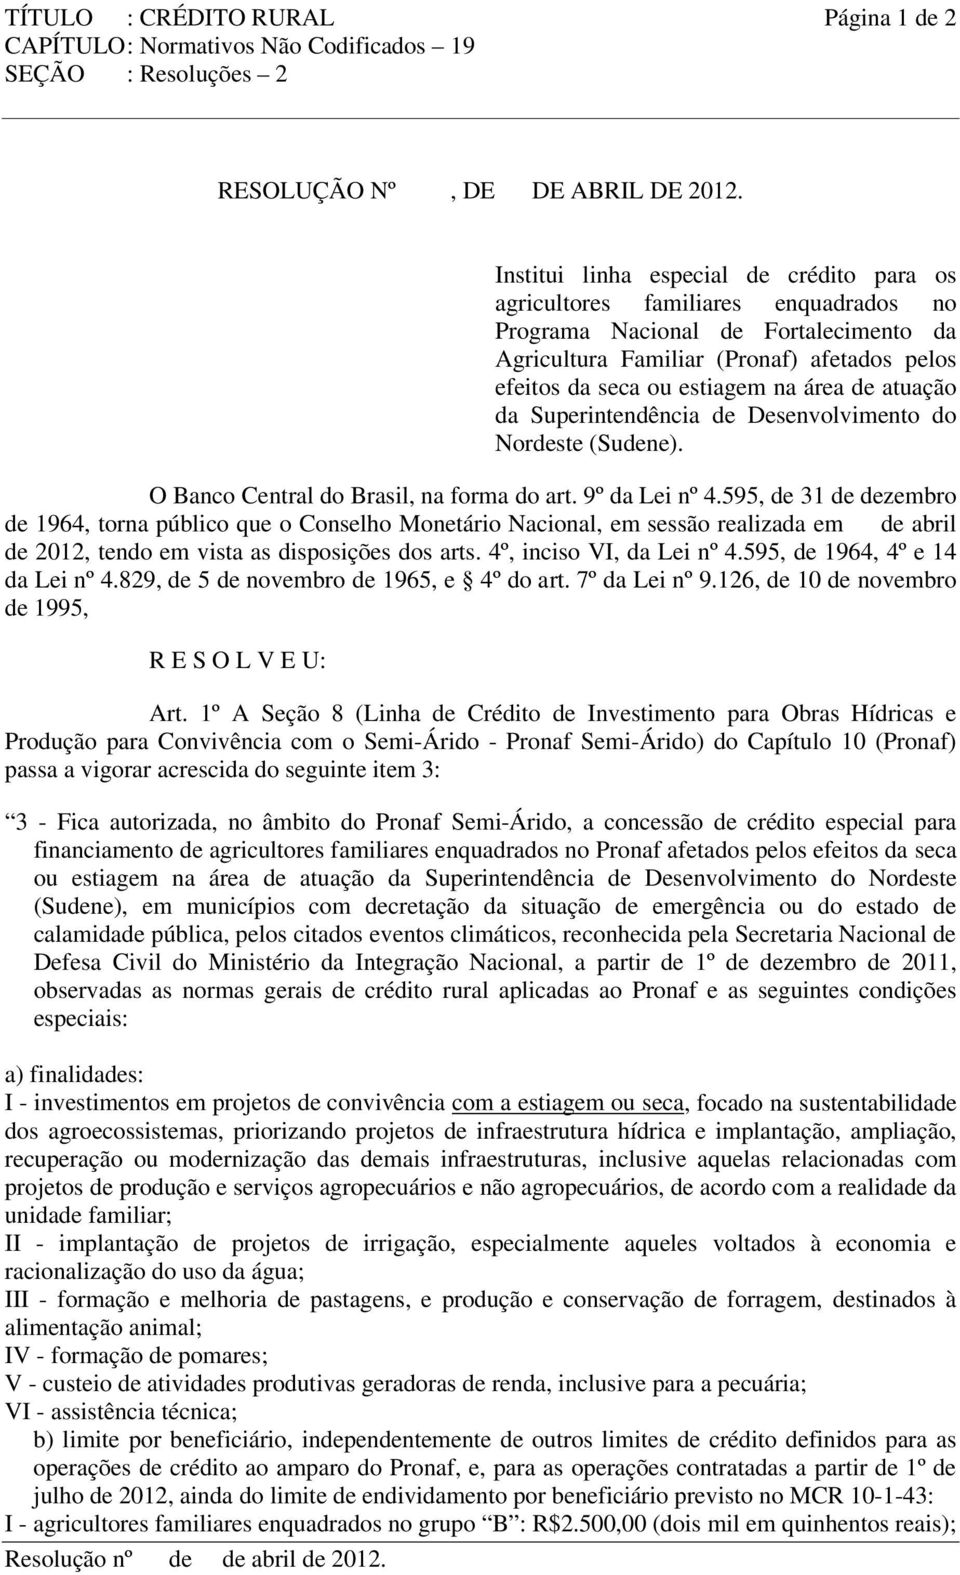 área de atuação da Superintendência de Desenvolvimento do Nordeste (Sudene). O Banco Central do Brasil, na forma do art. 9º da Lei nº 4.